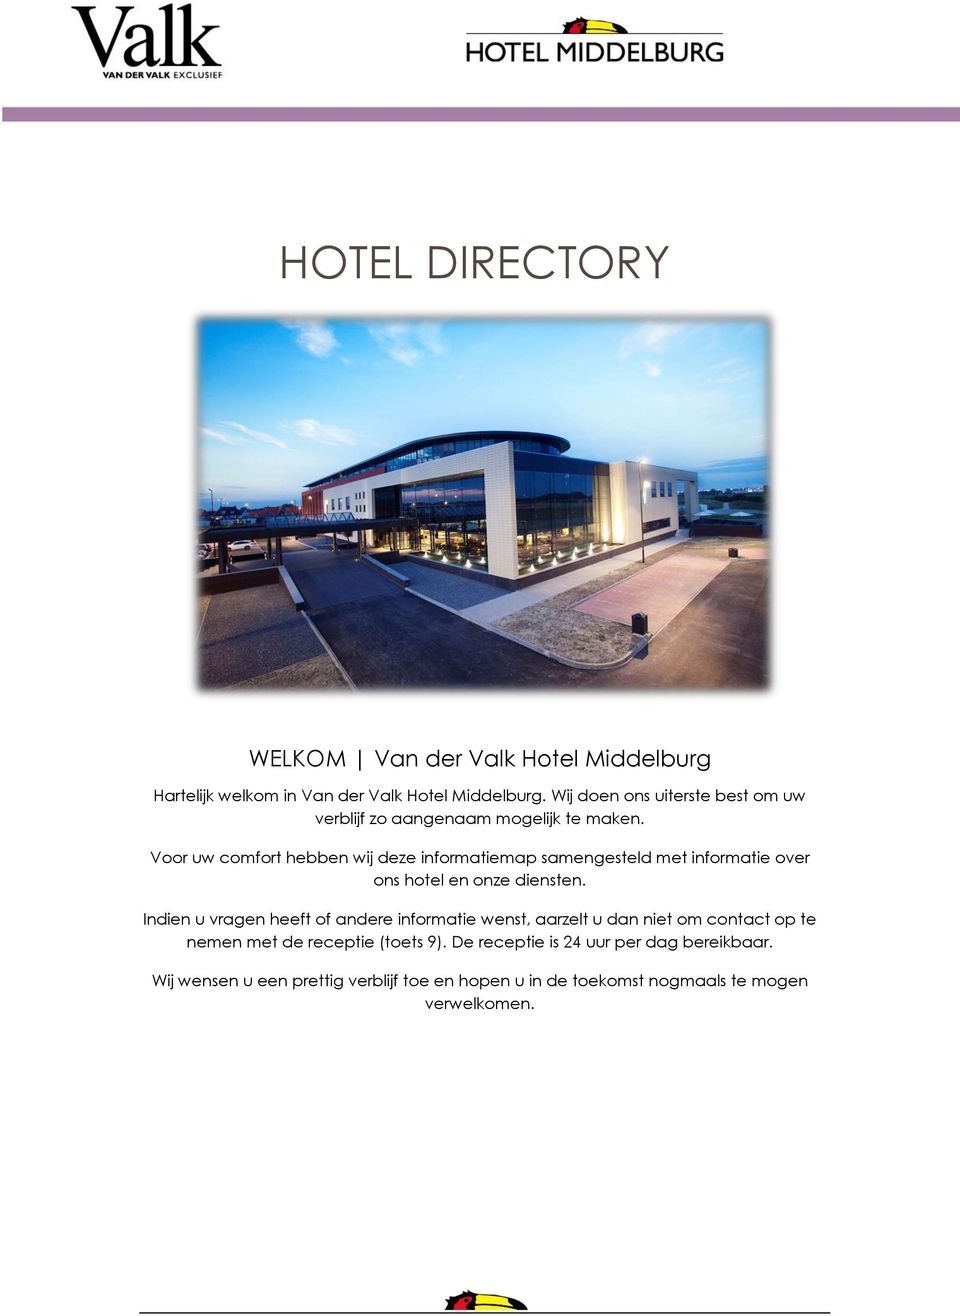 Voor uw comfort hebben wij deze informatiemap samengesteld met informatie over ons hotel en onze diensten.